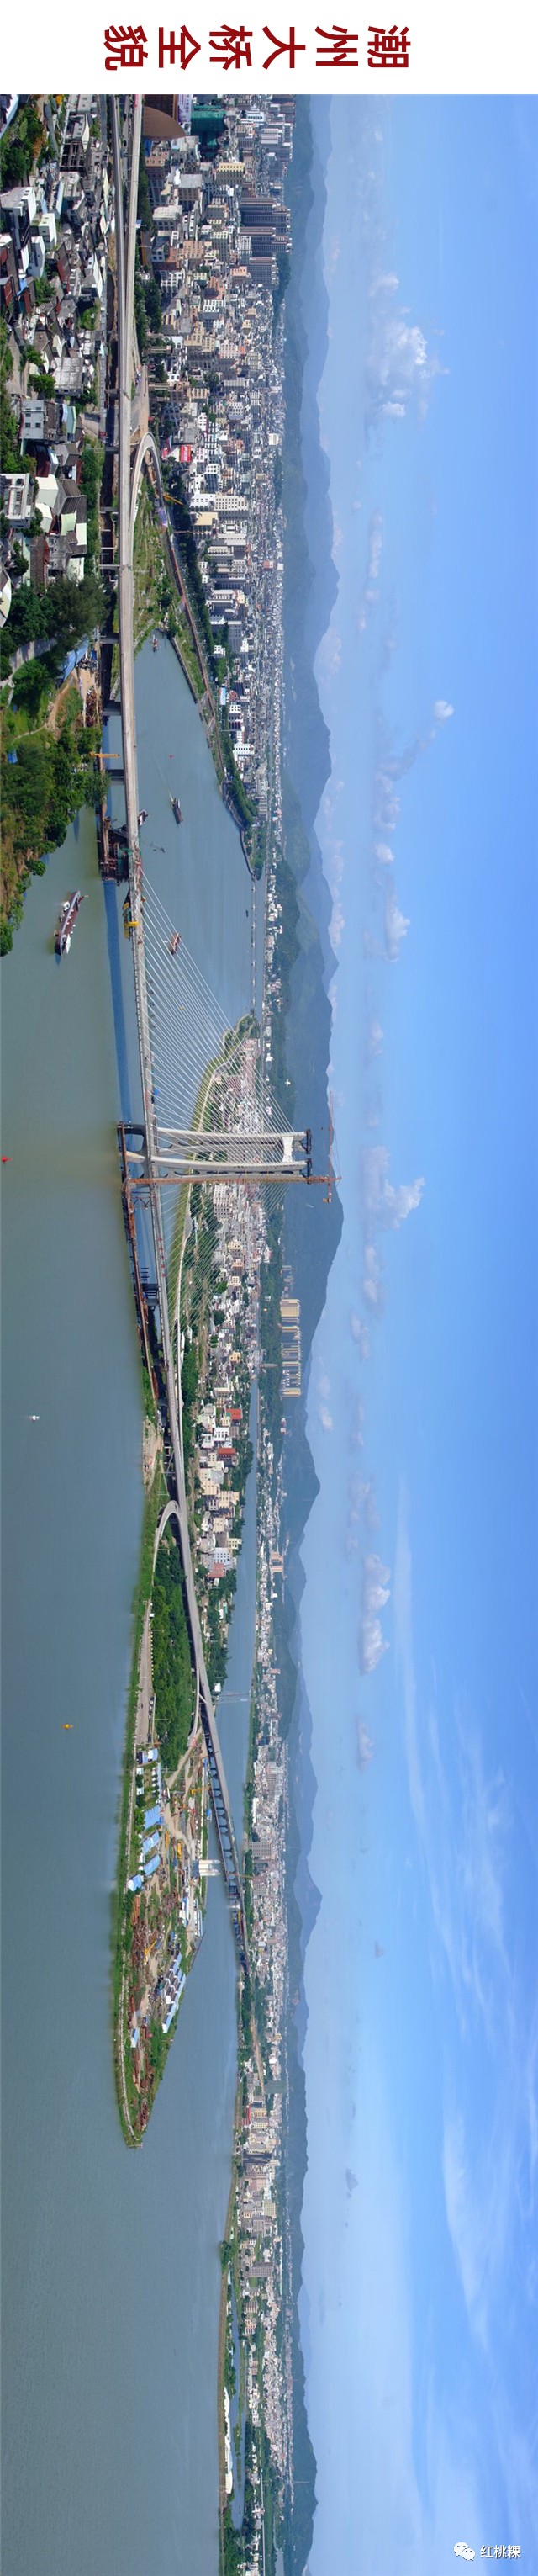 潮州如意大桥图片